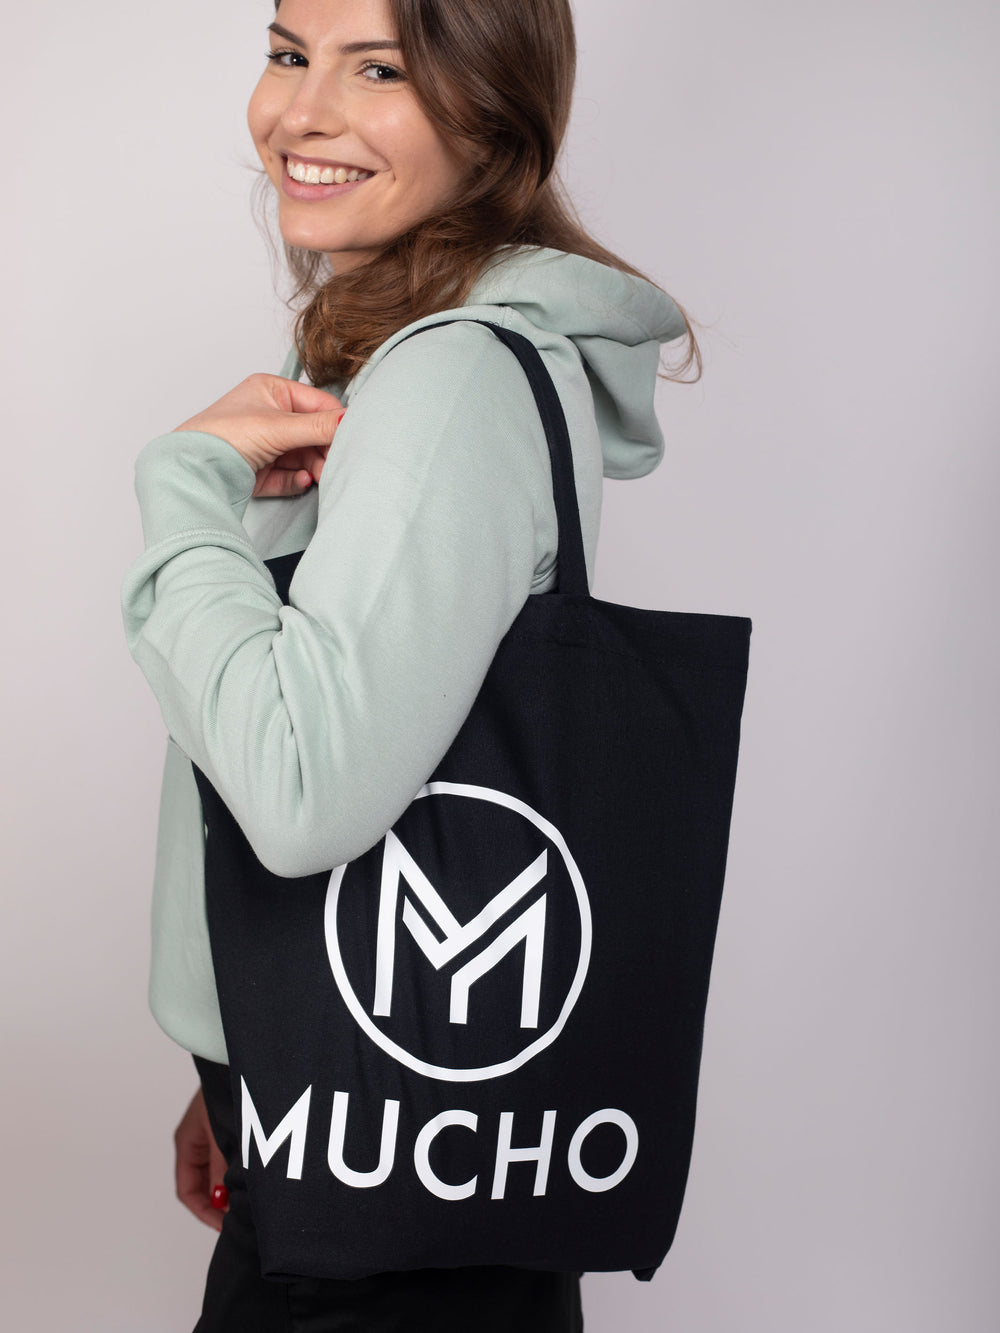 Femme souriante vêtue d'un sweat à capuche et portant un sac Cabas en coton de la marque Mucho.Shop